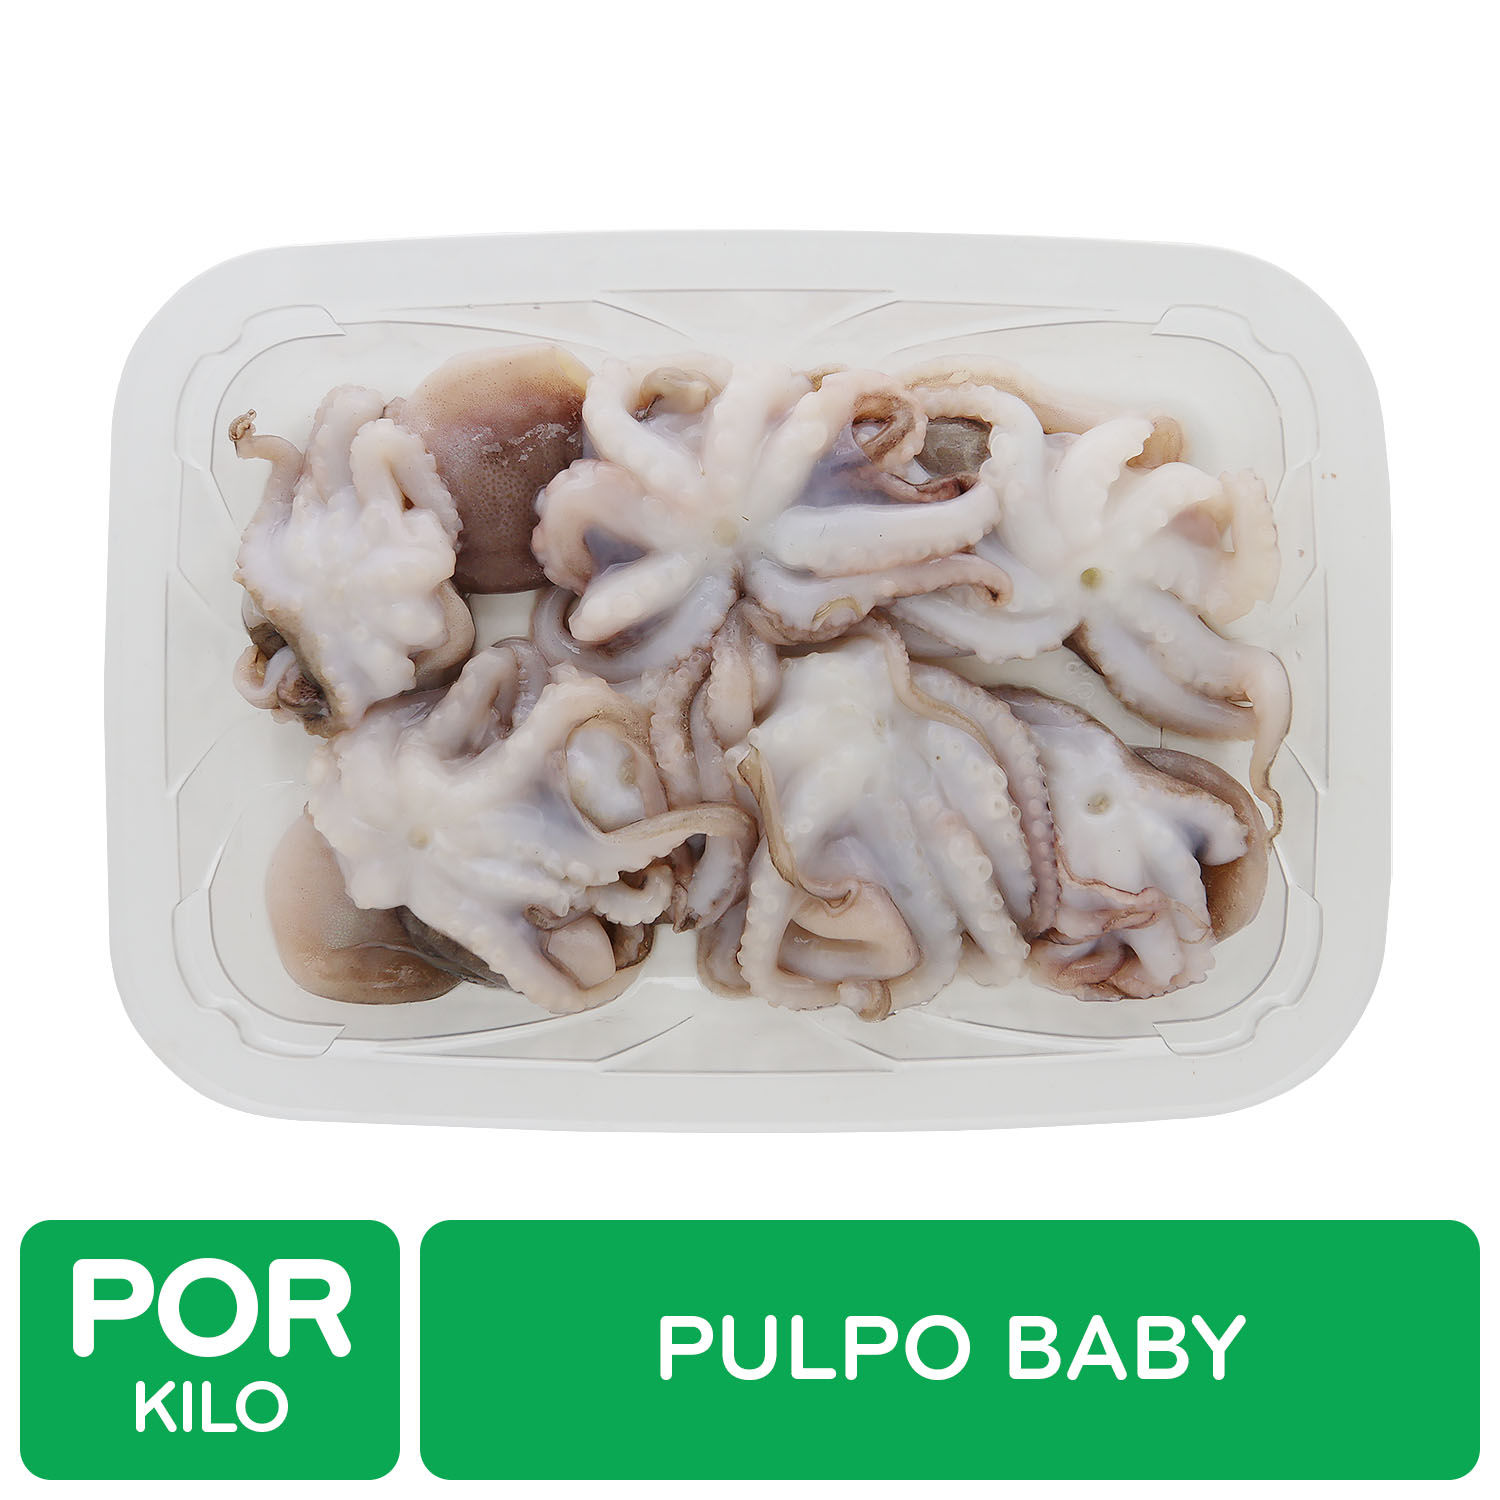 Pulpo Baby Auto Mercado Kilogramo